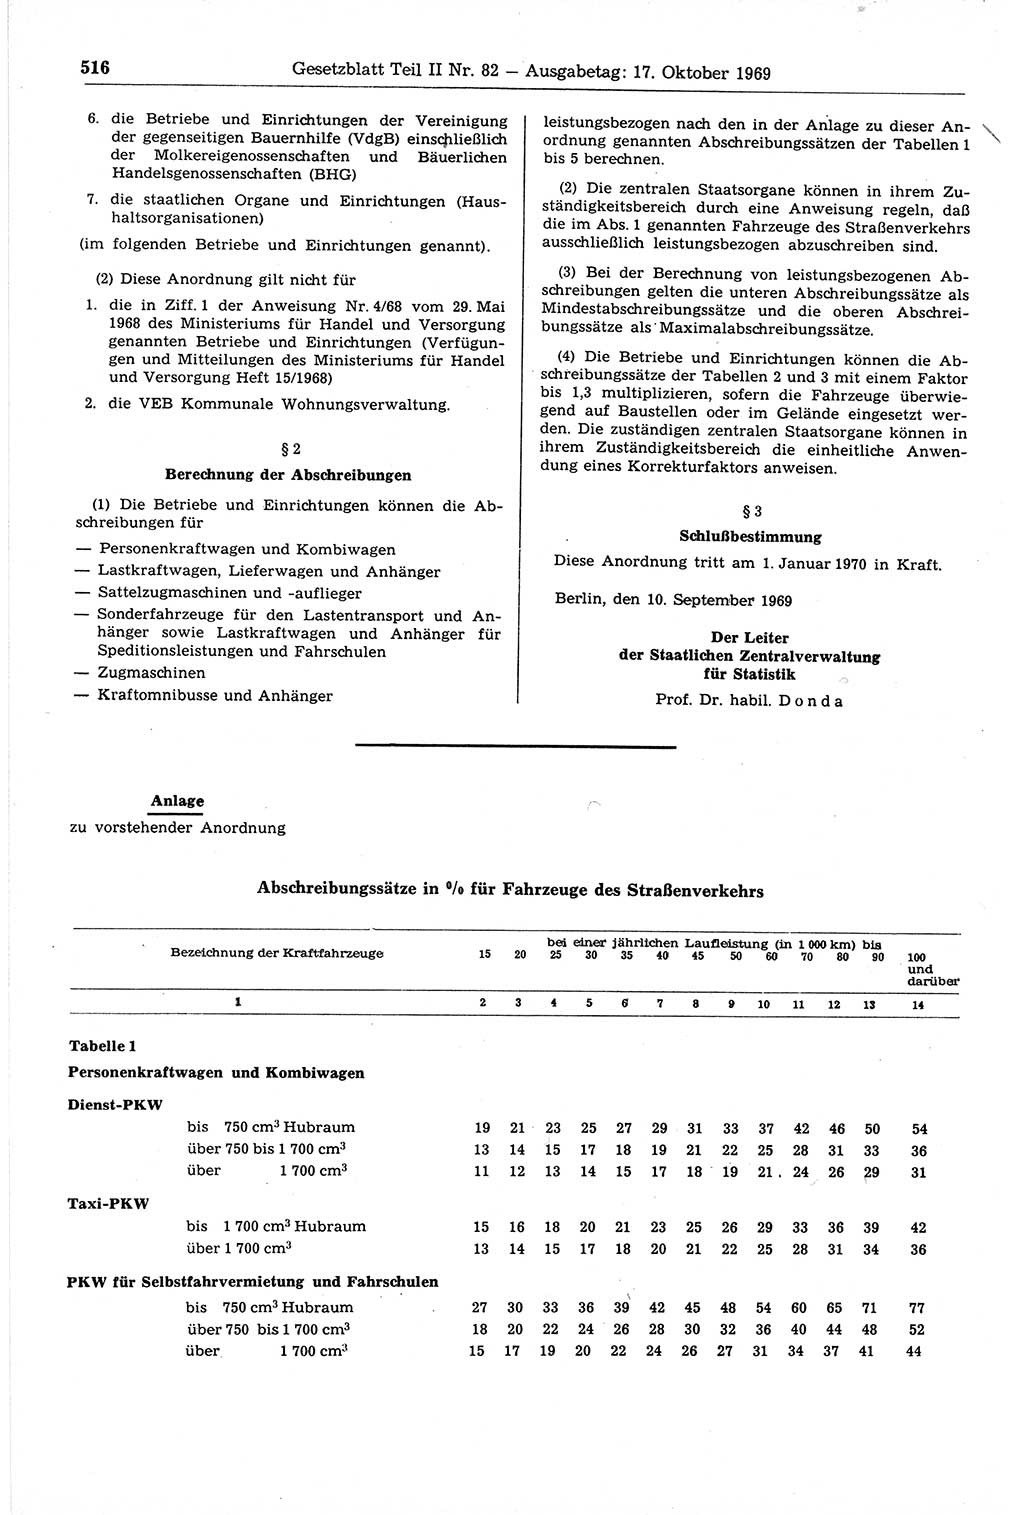 Gesetzblatt (GBl.) der Deutschen Demokratischen Republik (DDR) Teil ⅠⅠ 1969, Seite 516 (GBl. DDR ⅠⅠ 1969, S. 516)